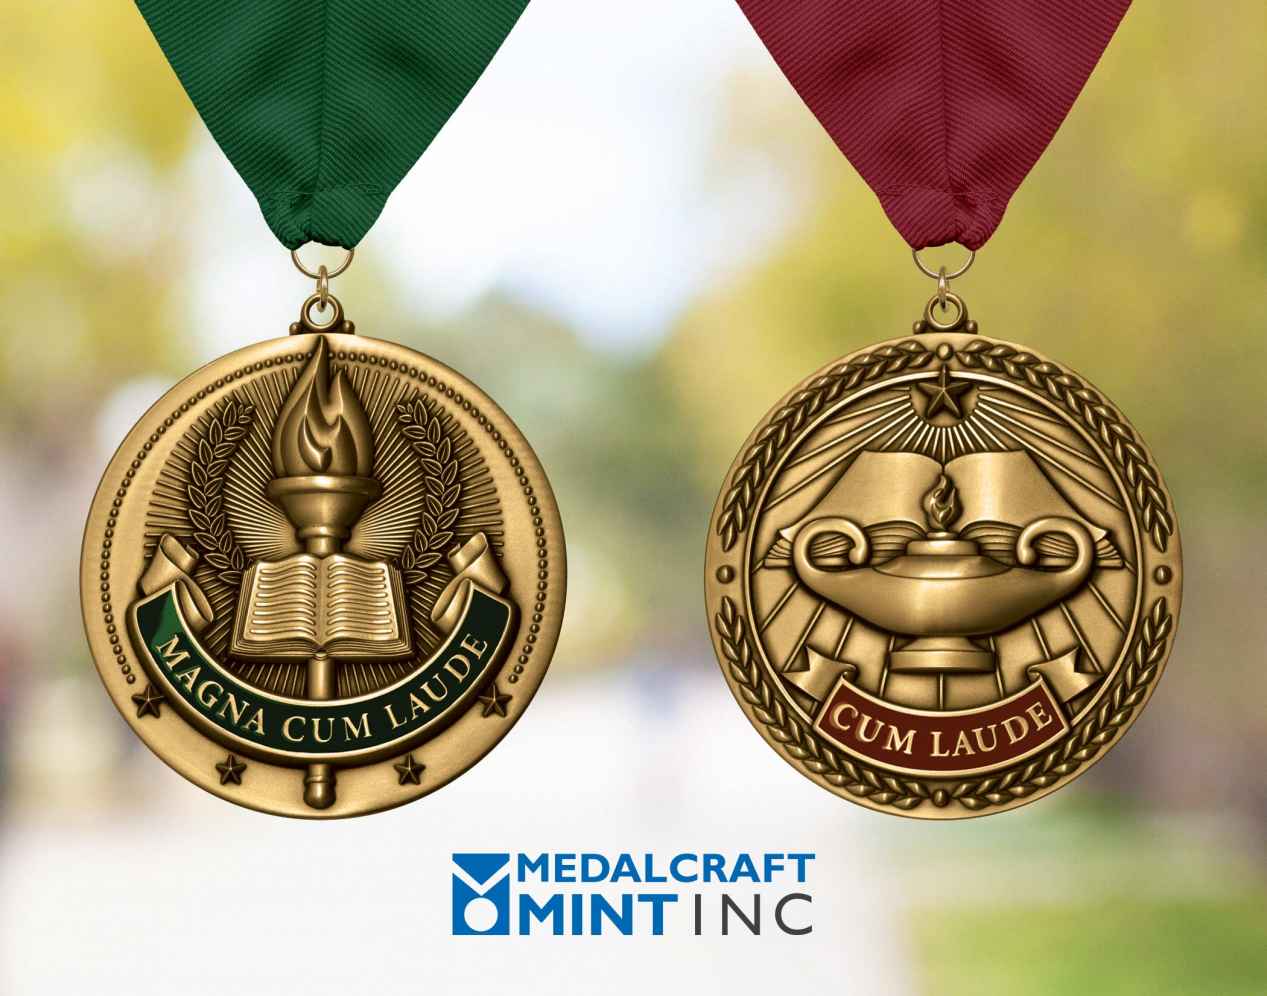 Medalcraft Mint graduation medals